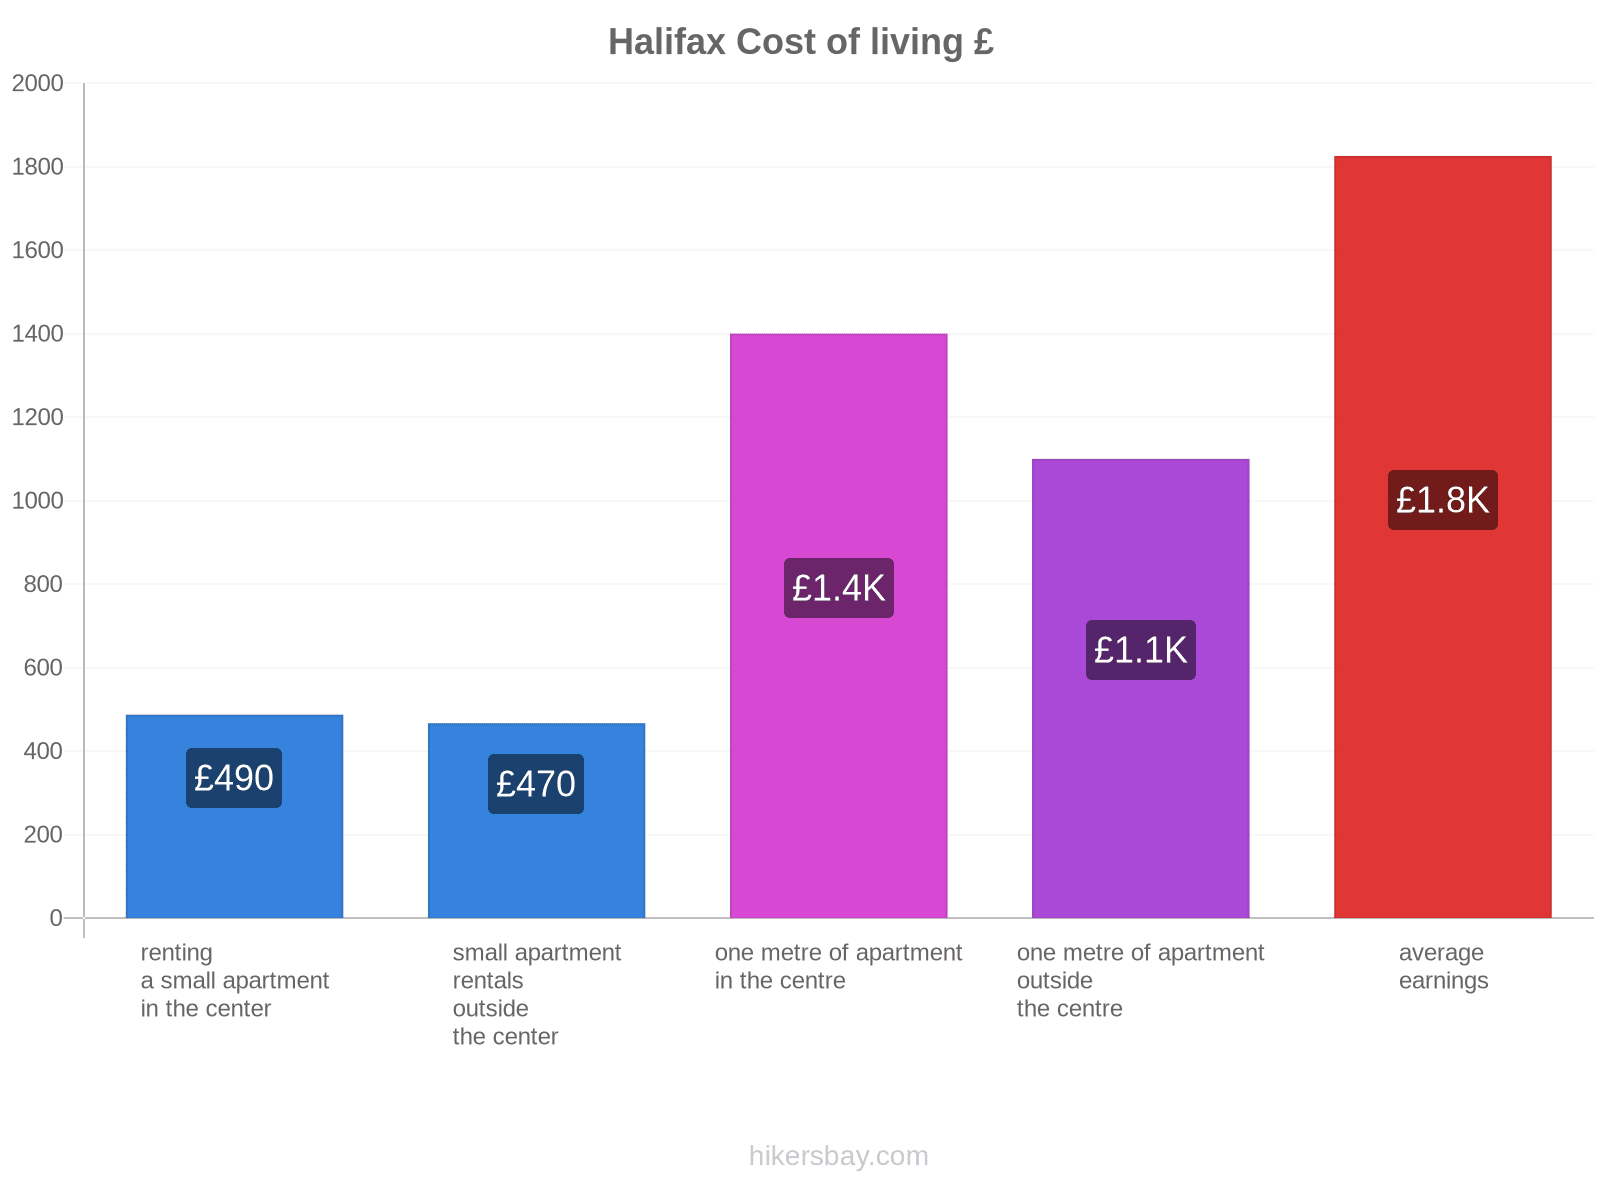 Halifax cost of living hikersbay.com